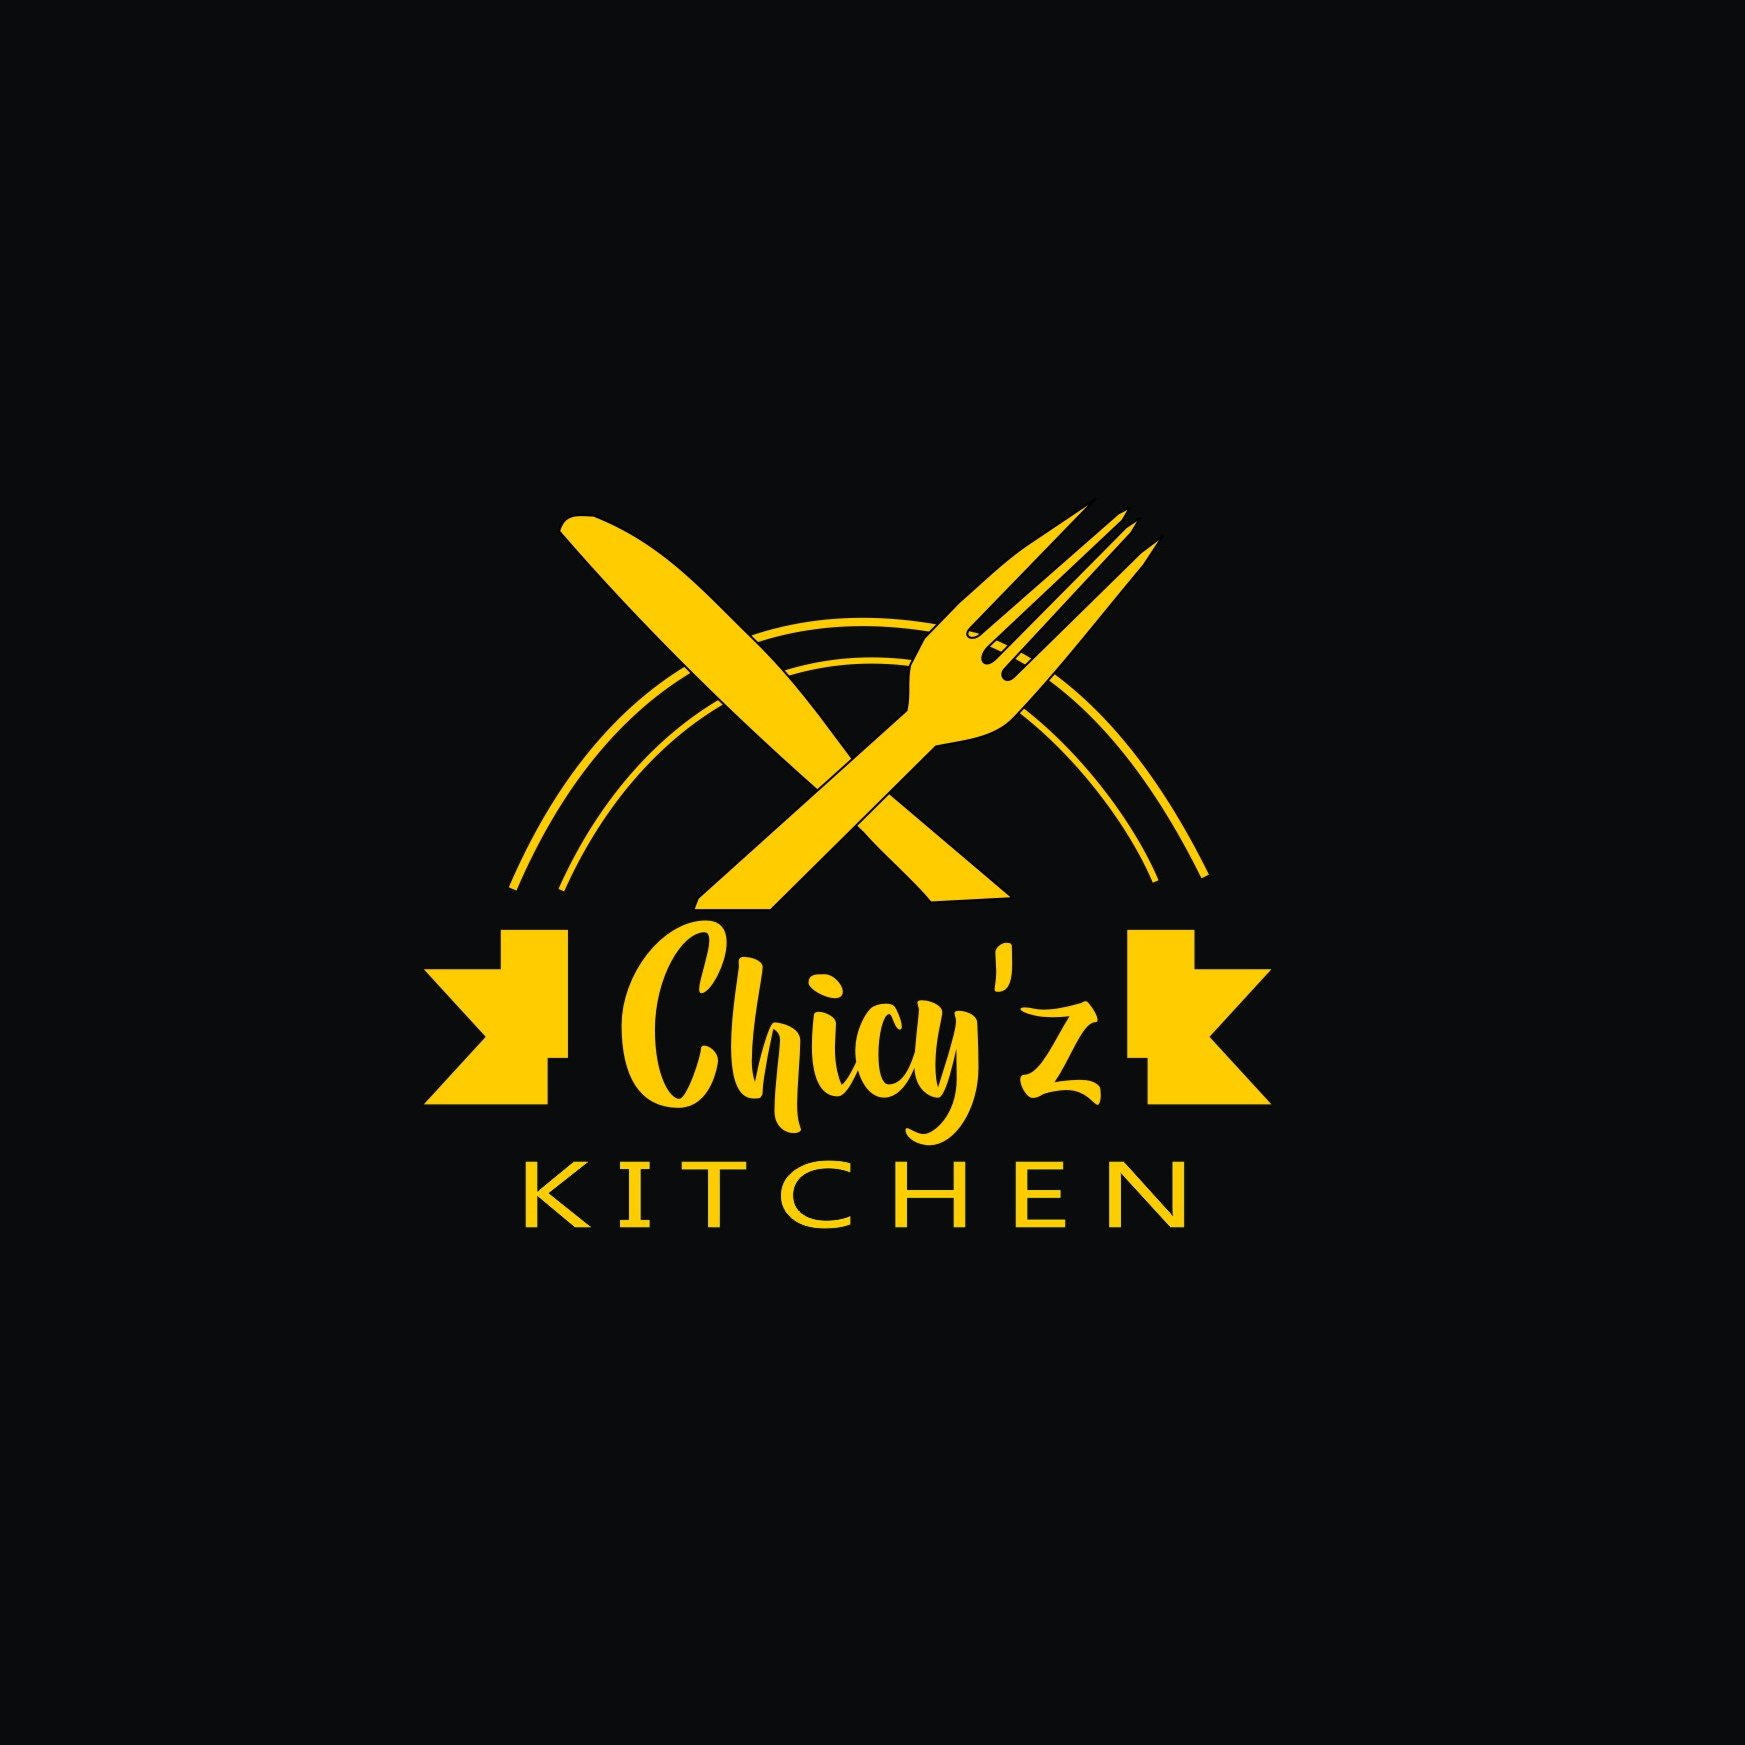 Chicy Z Kitchen Czkitchen Twitter